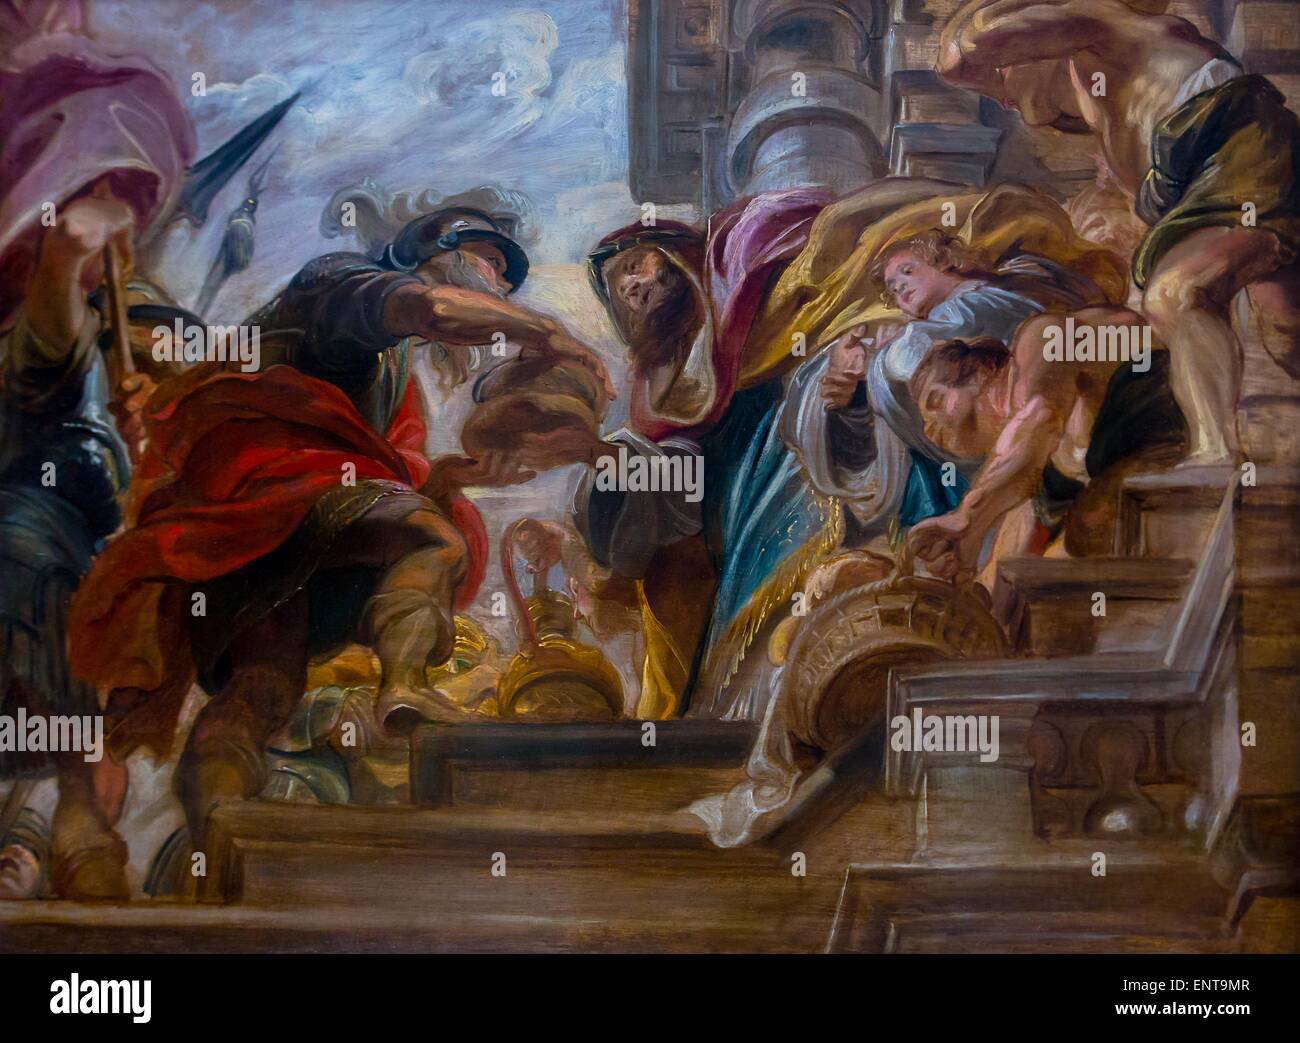 Das Treffen zwischen Abraham und Melchisedek Öl auf Holz 26.09.2013 - Sammlung des 17. Jahrhunderts Stockfoto